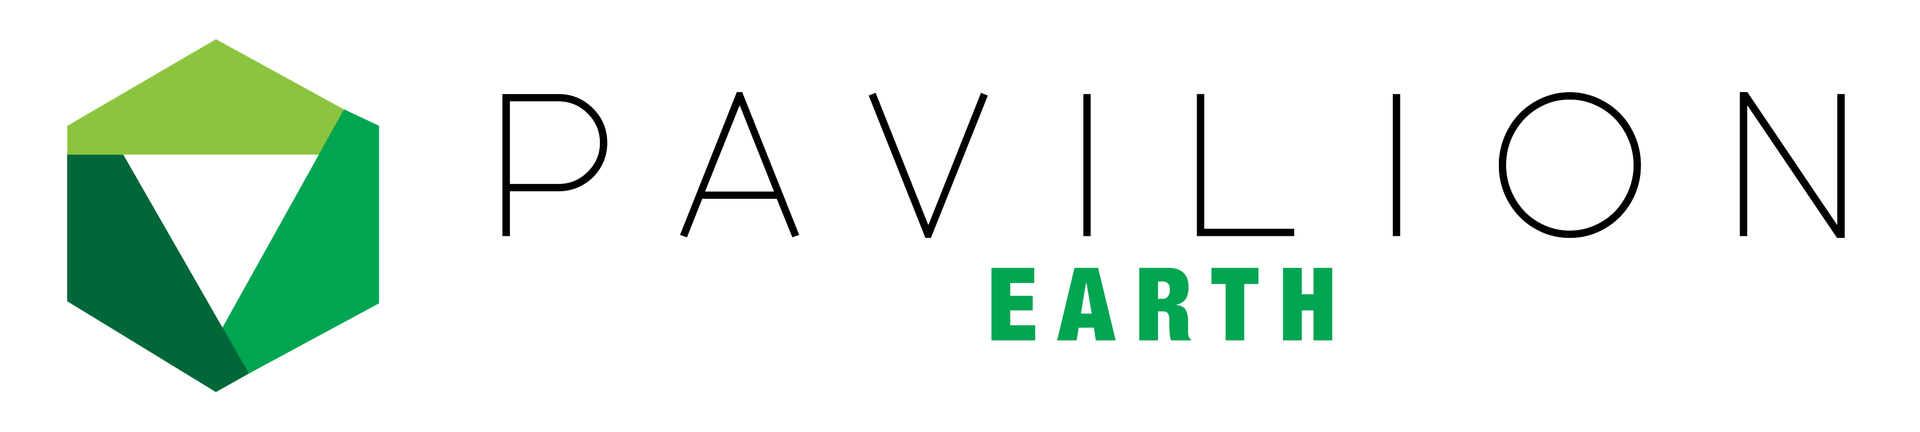 Pavilion Earth Logo